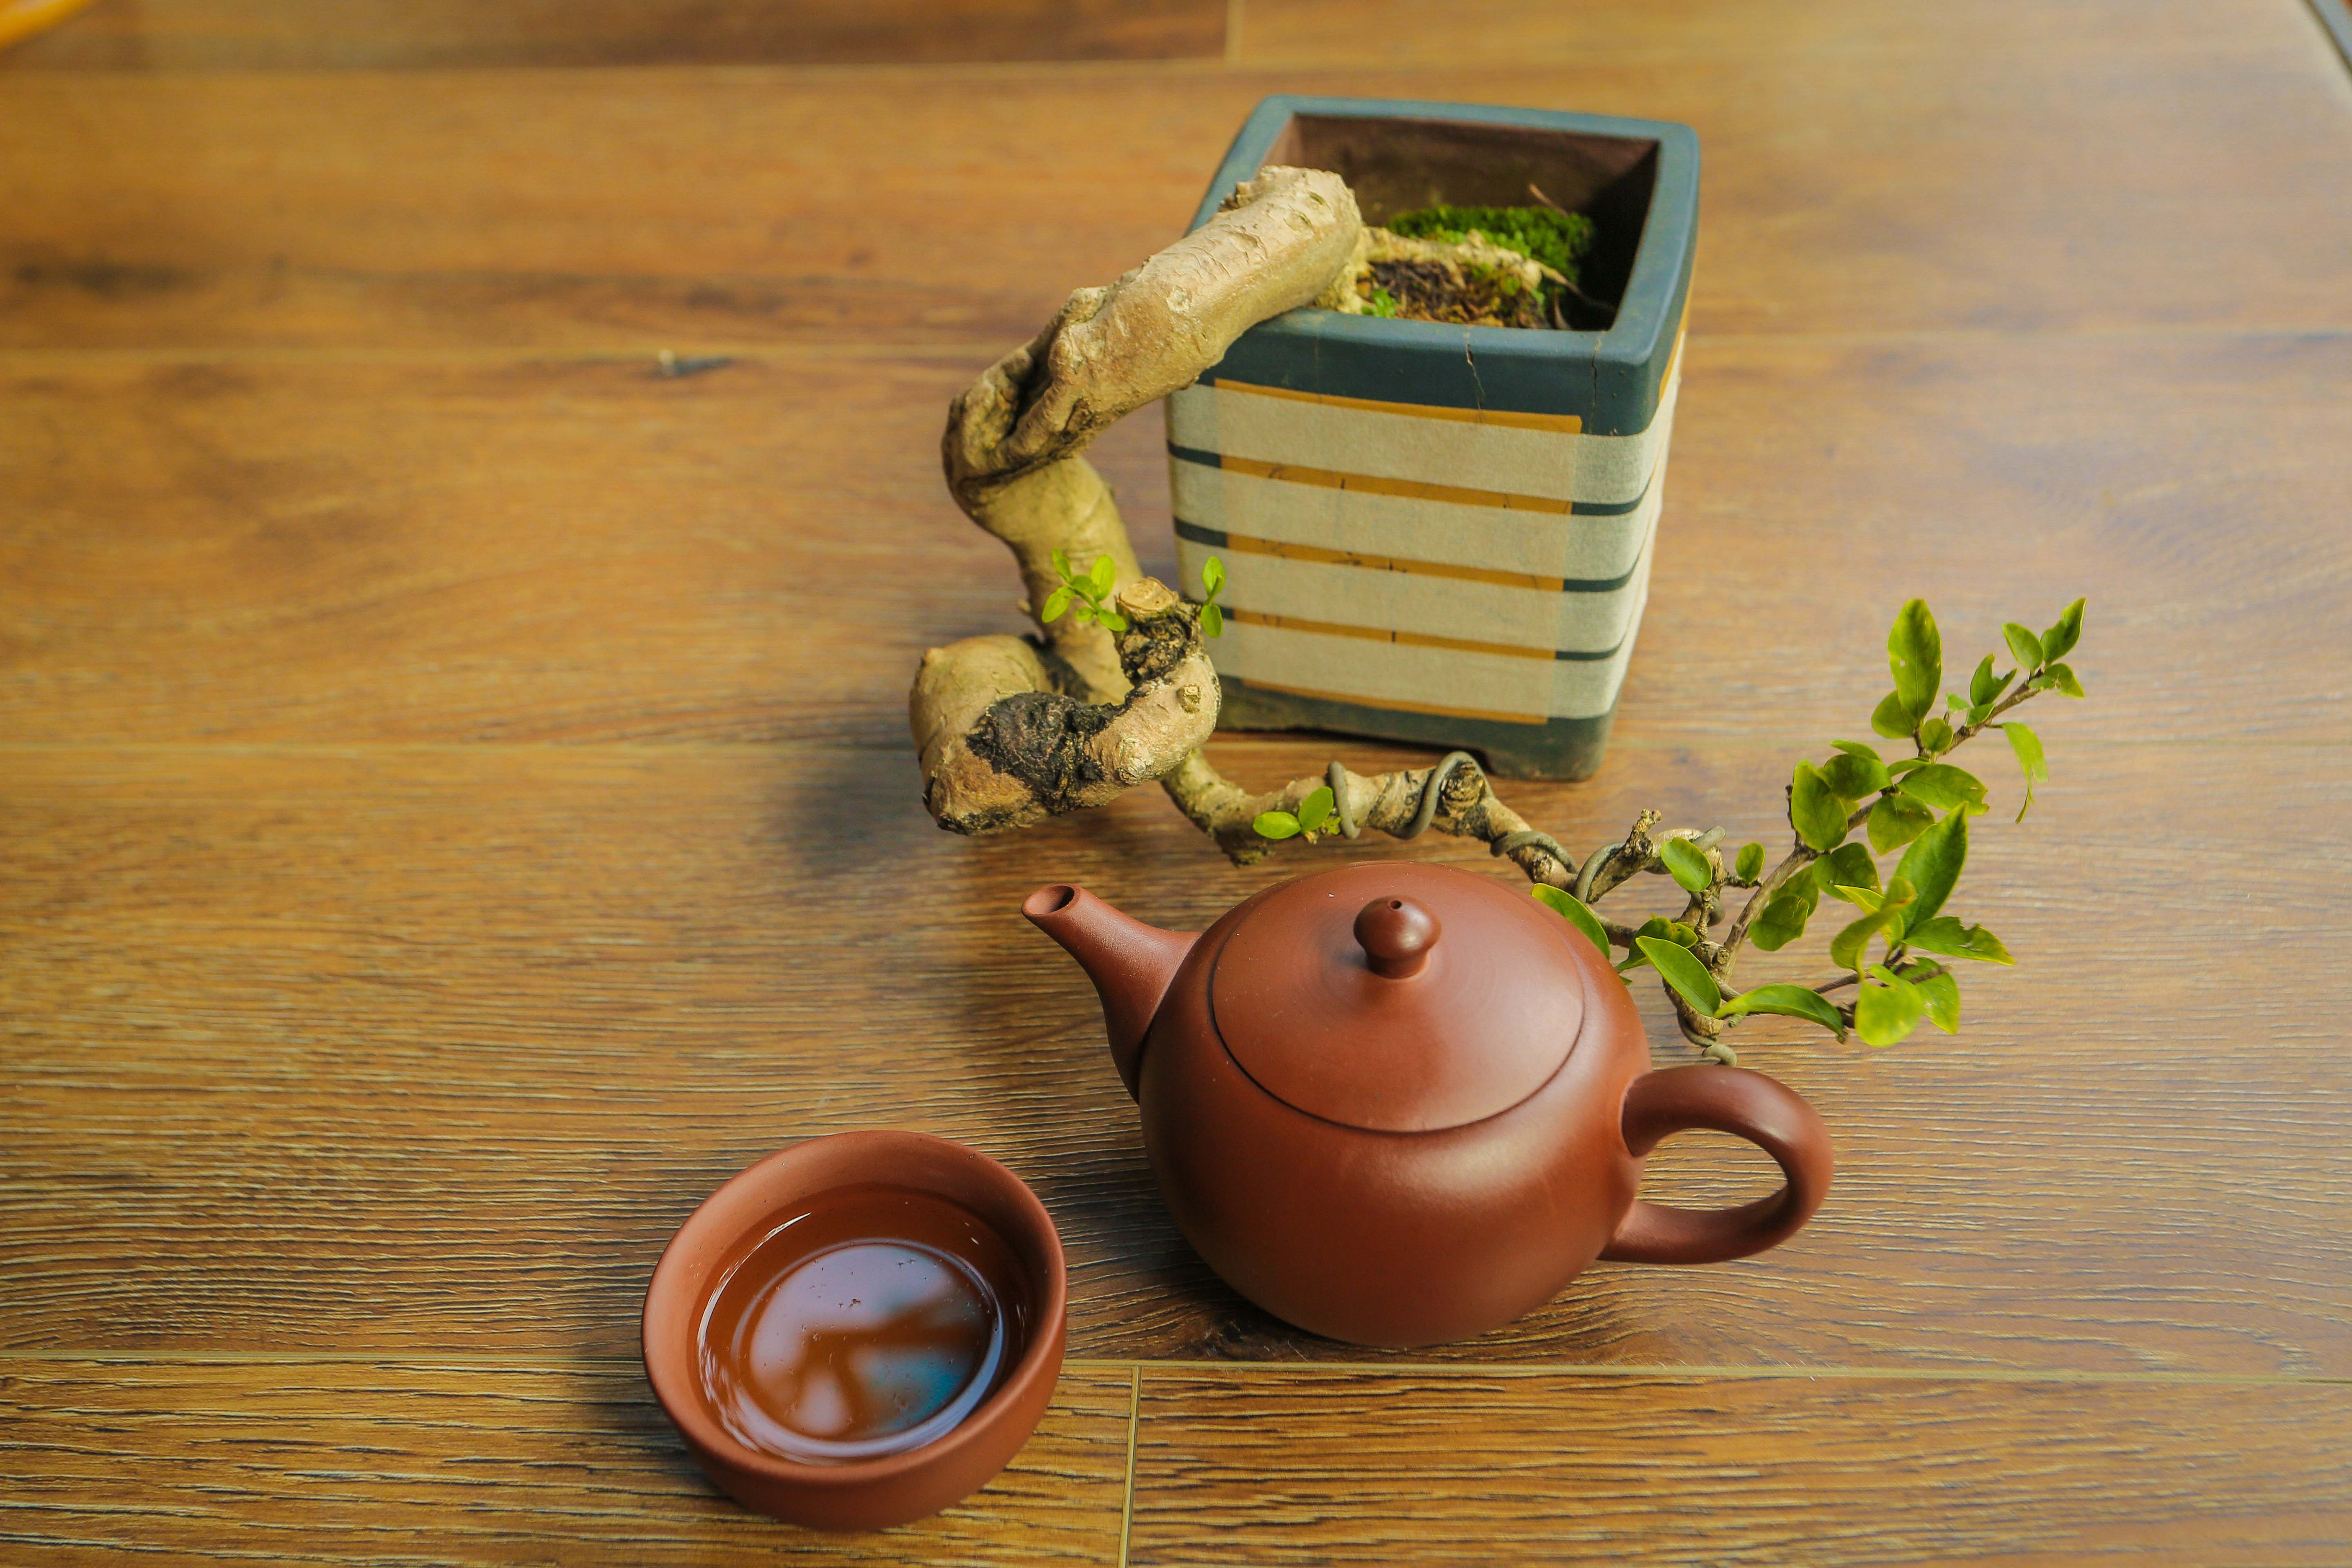 Bộ ấm gốm sứ - Bộ trà đất nung - Bộ ấm trà An Thổ Túc - Bộ ấm trà Trăng tròn